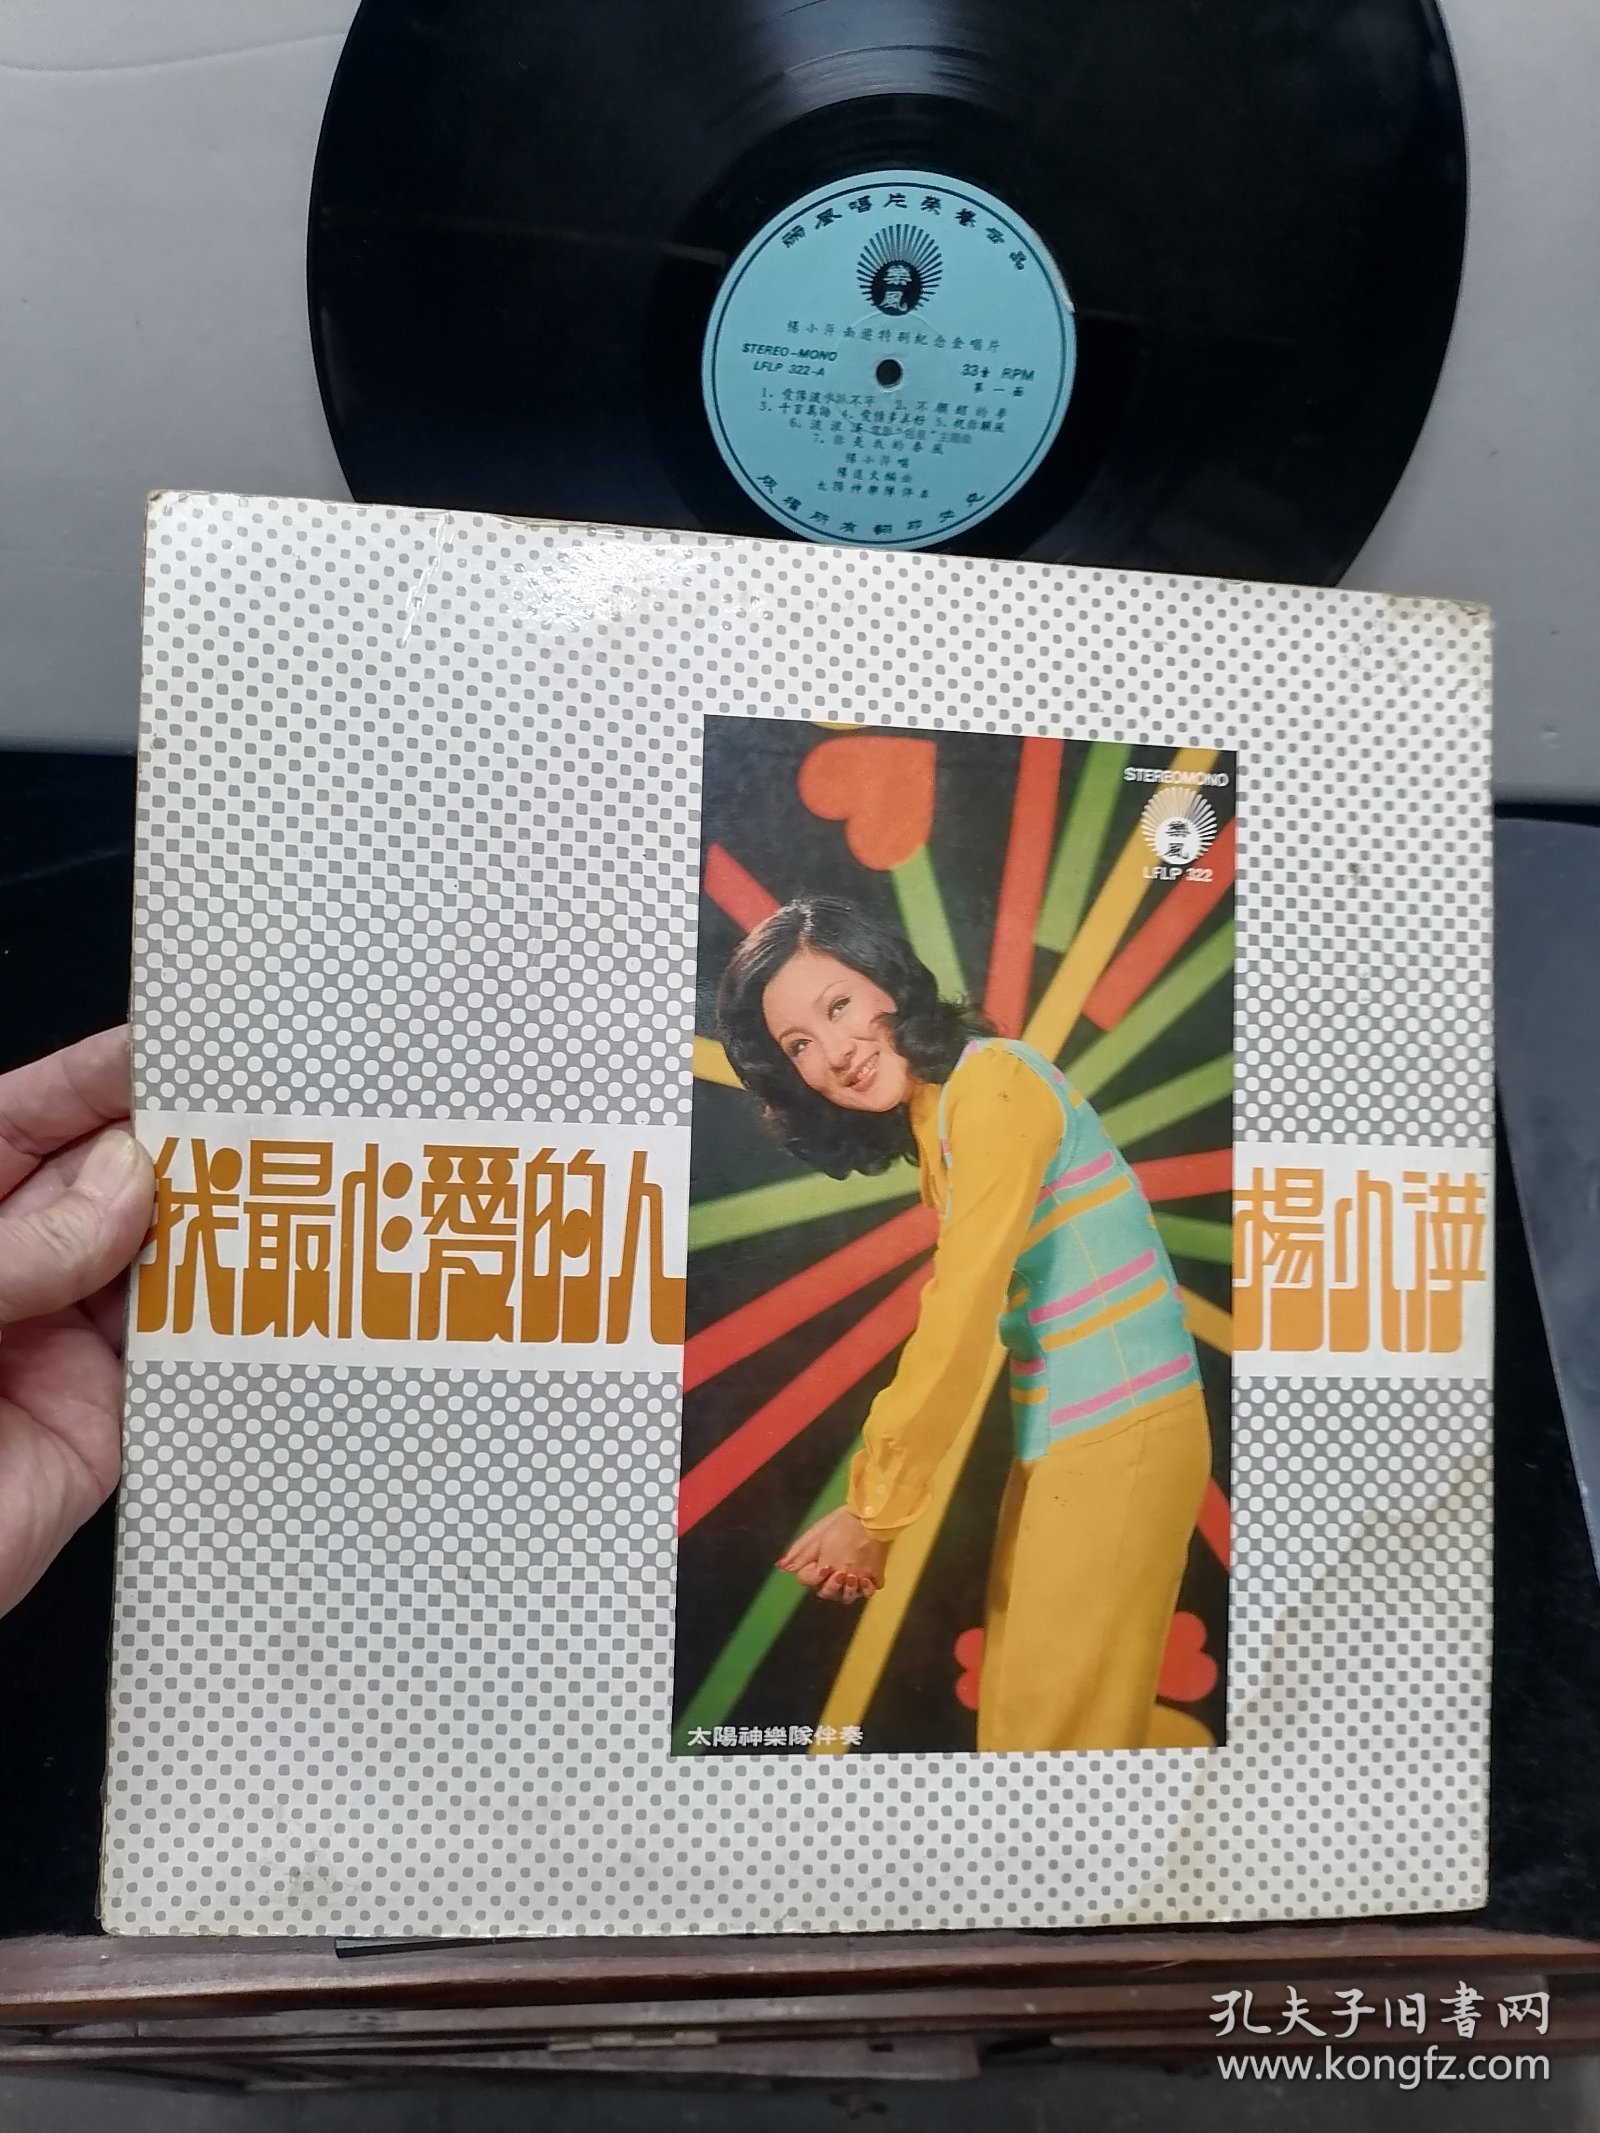 杨小萍，爱像流水抓不牢，大黑胶唱片，有少量细微划痕，见图，香港丽风唱片公司。稀见